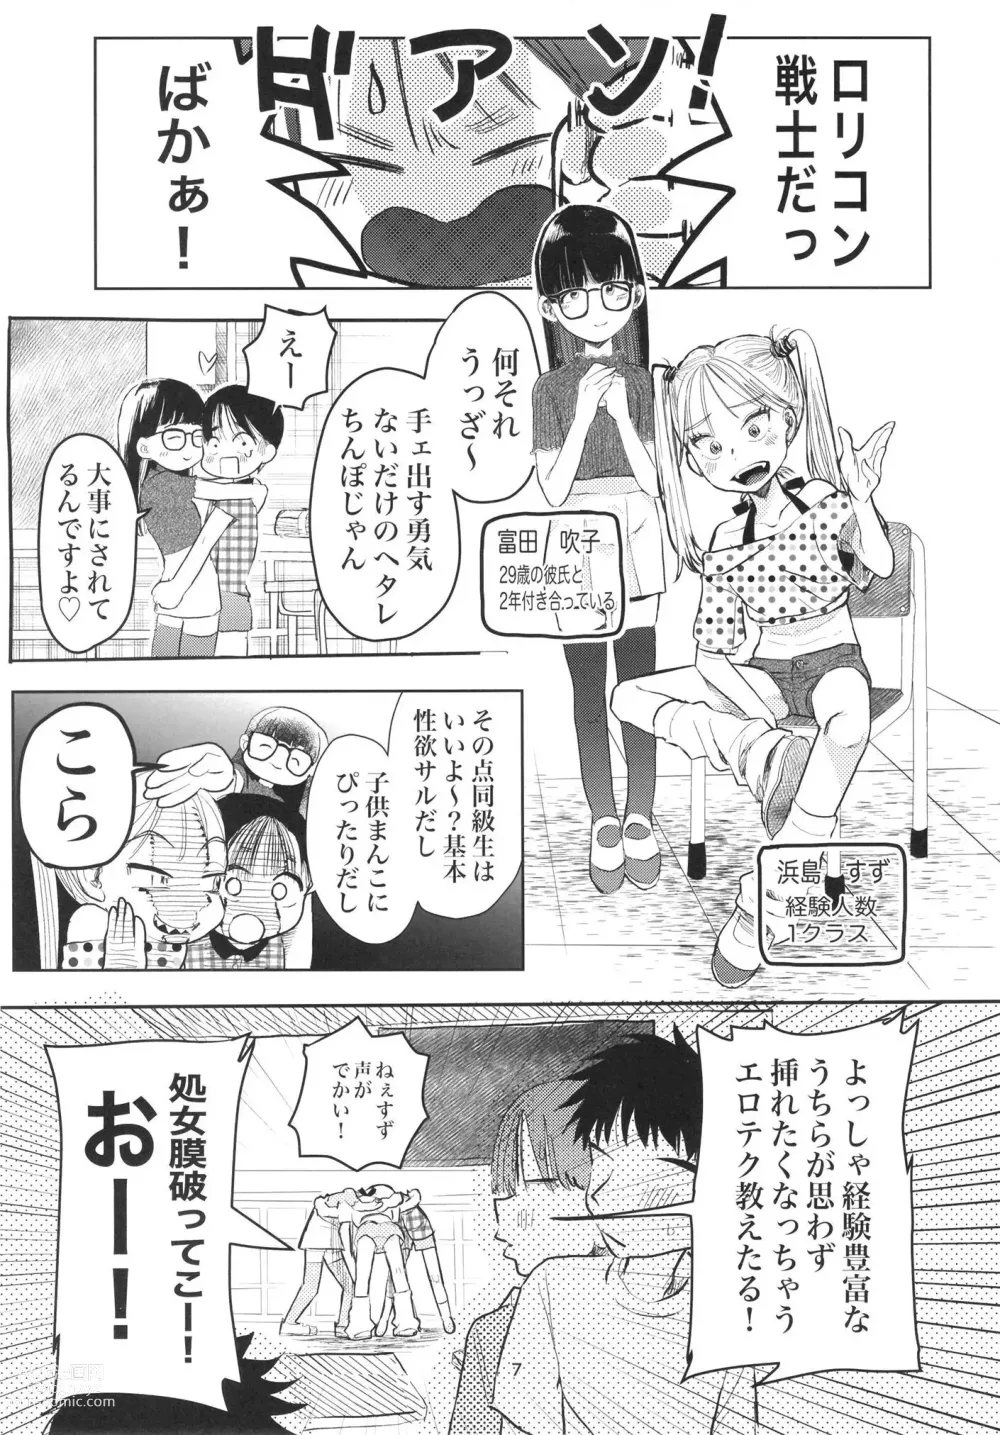 Page 6 of doujinshi Kodomo datte sounyuu shitai!